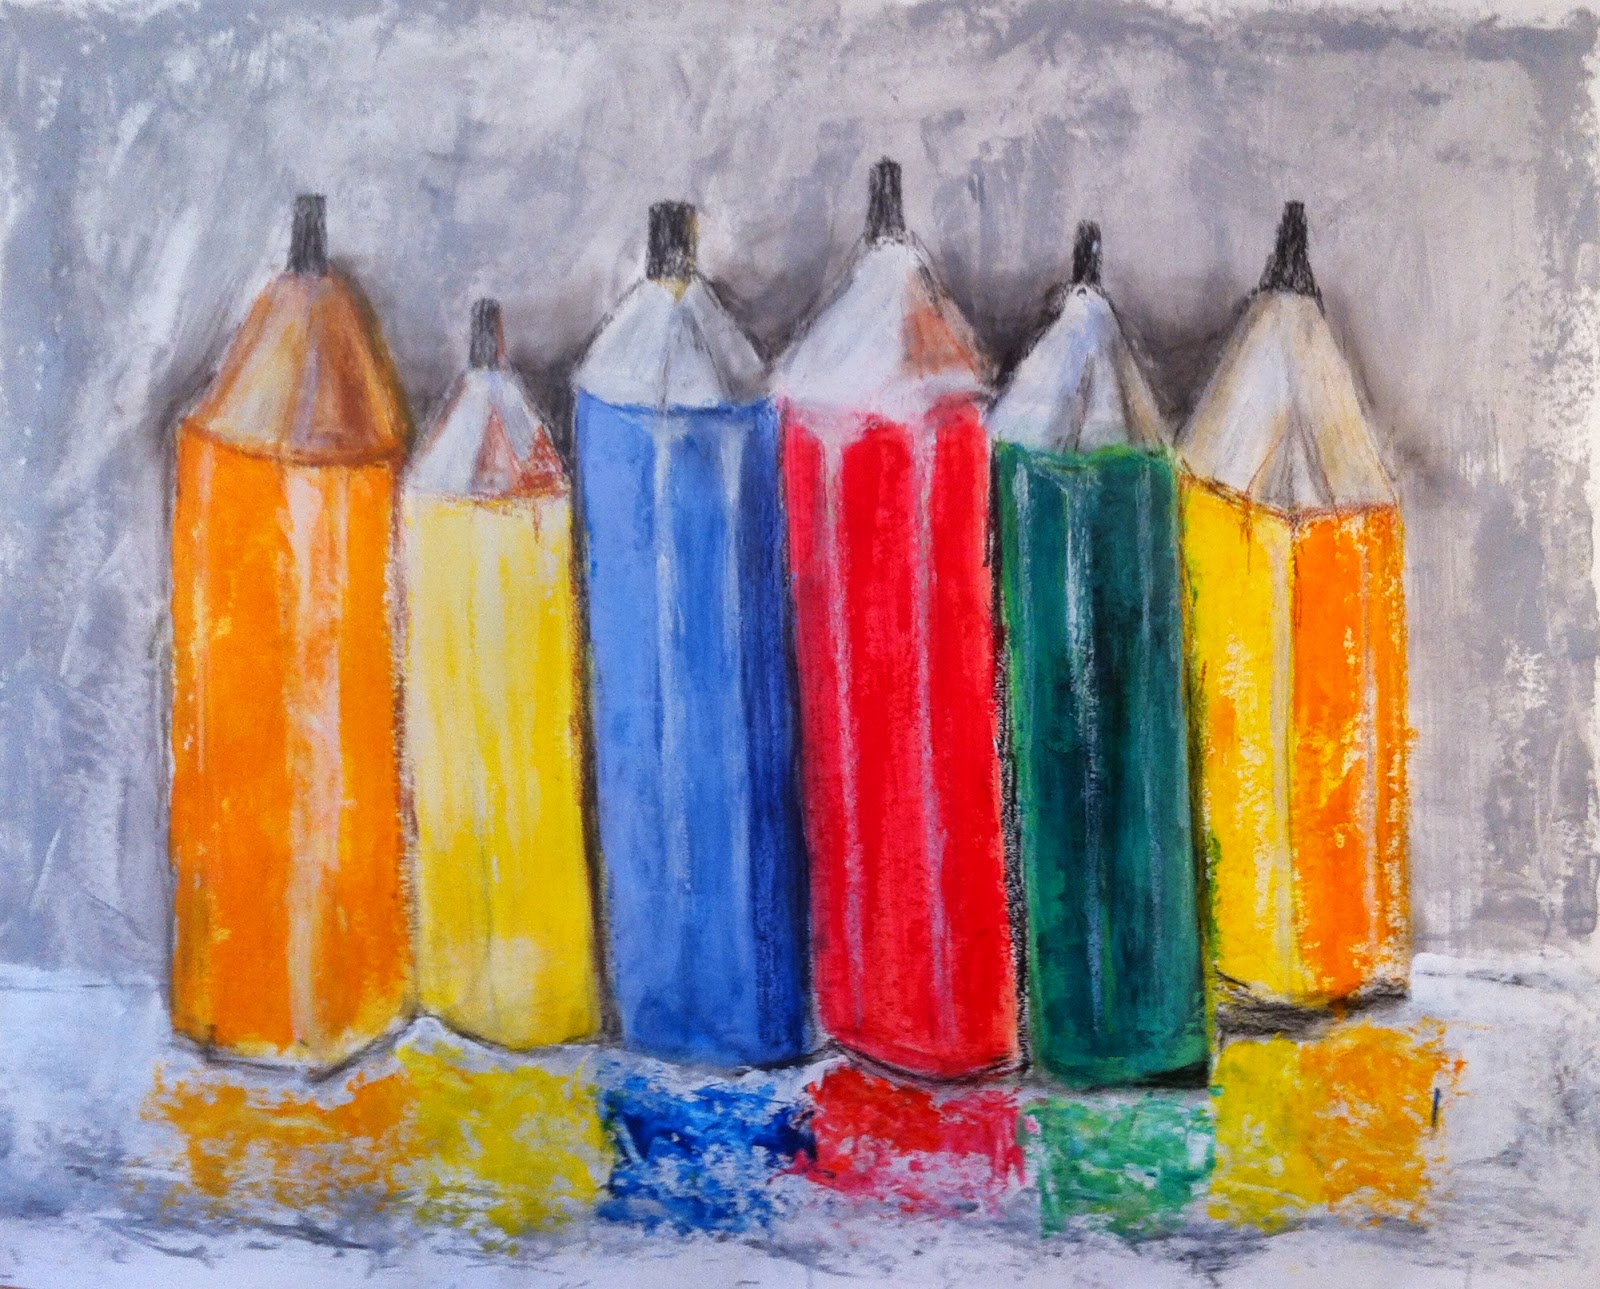 N°149 - Nature morte aux crayons de couleur - Acrylique et pastel sur papier - 95 x 123 cm - 10 juillet 2014